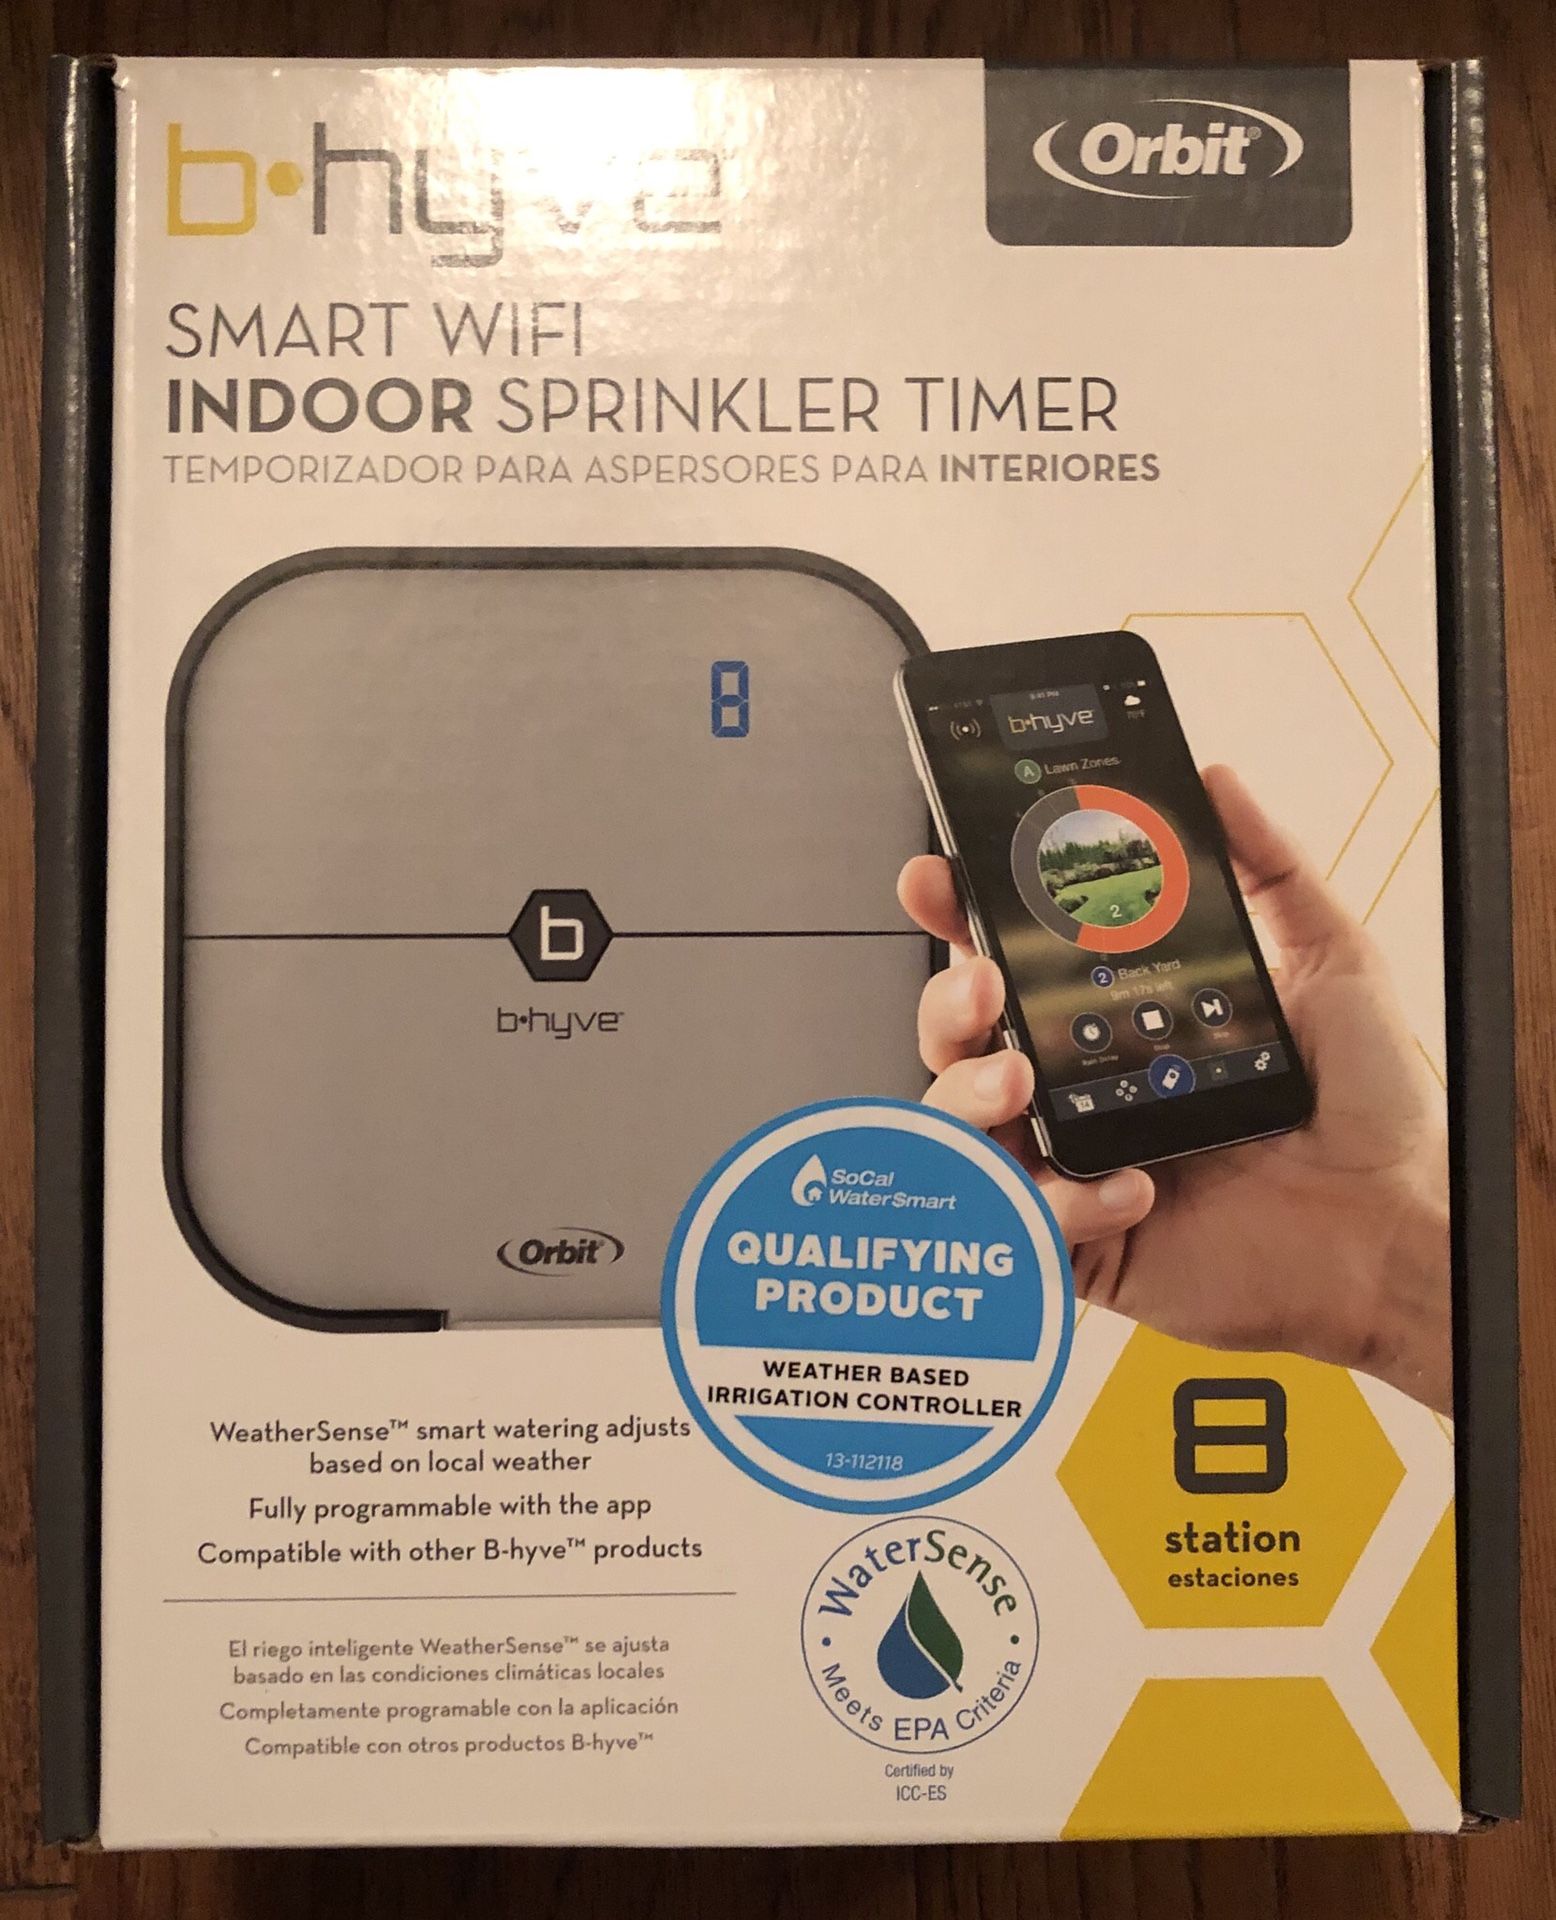 Orbit b hyve 8 Station Smart WiFi Indoor Sprinkler Timer.